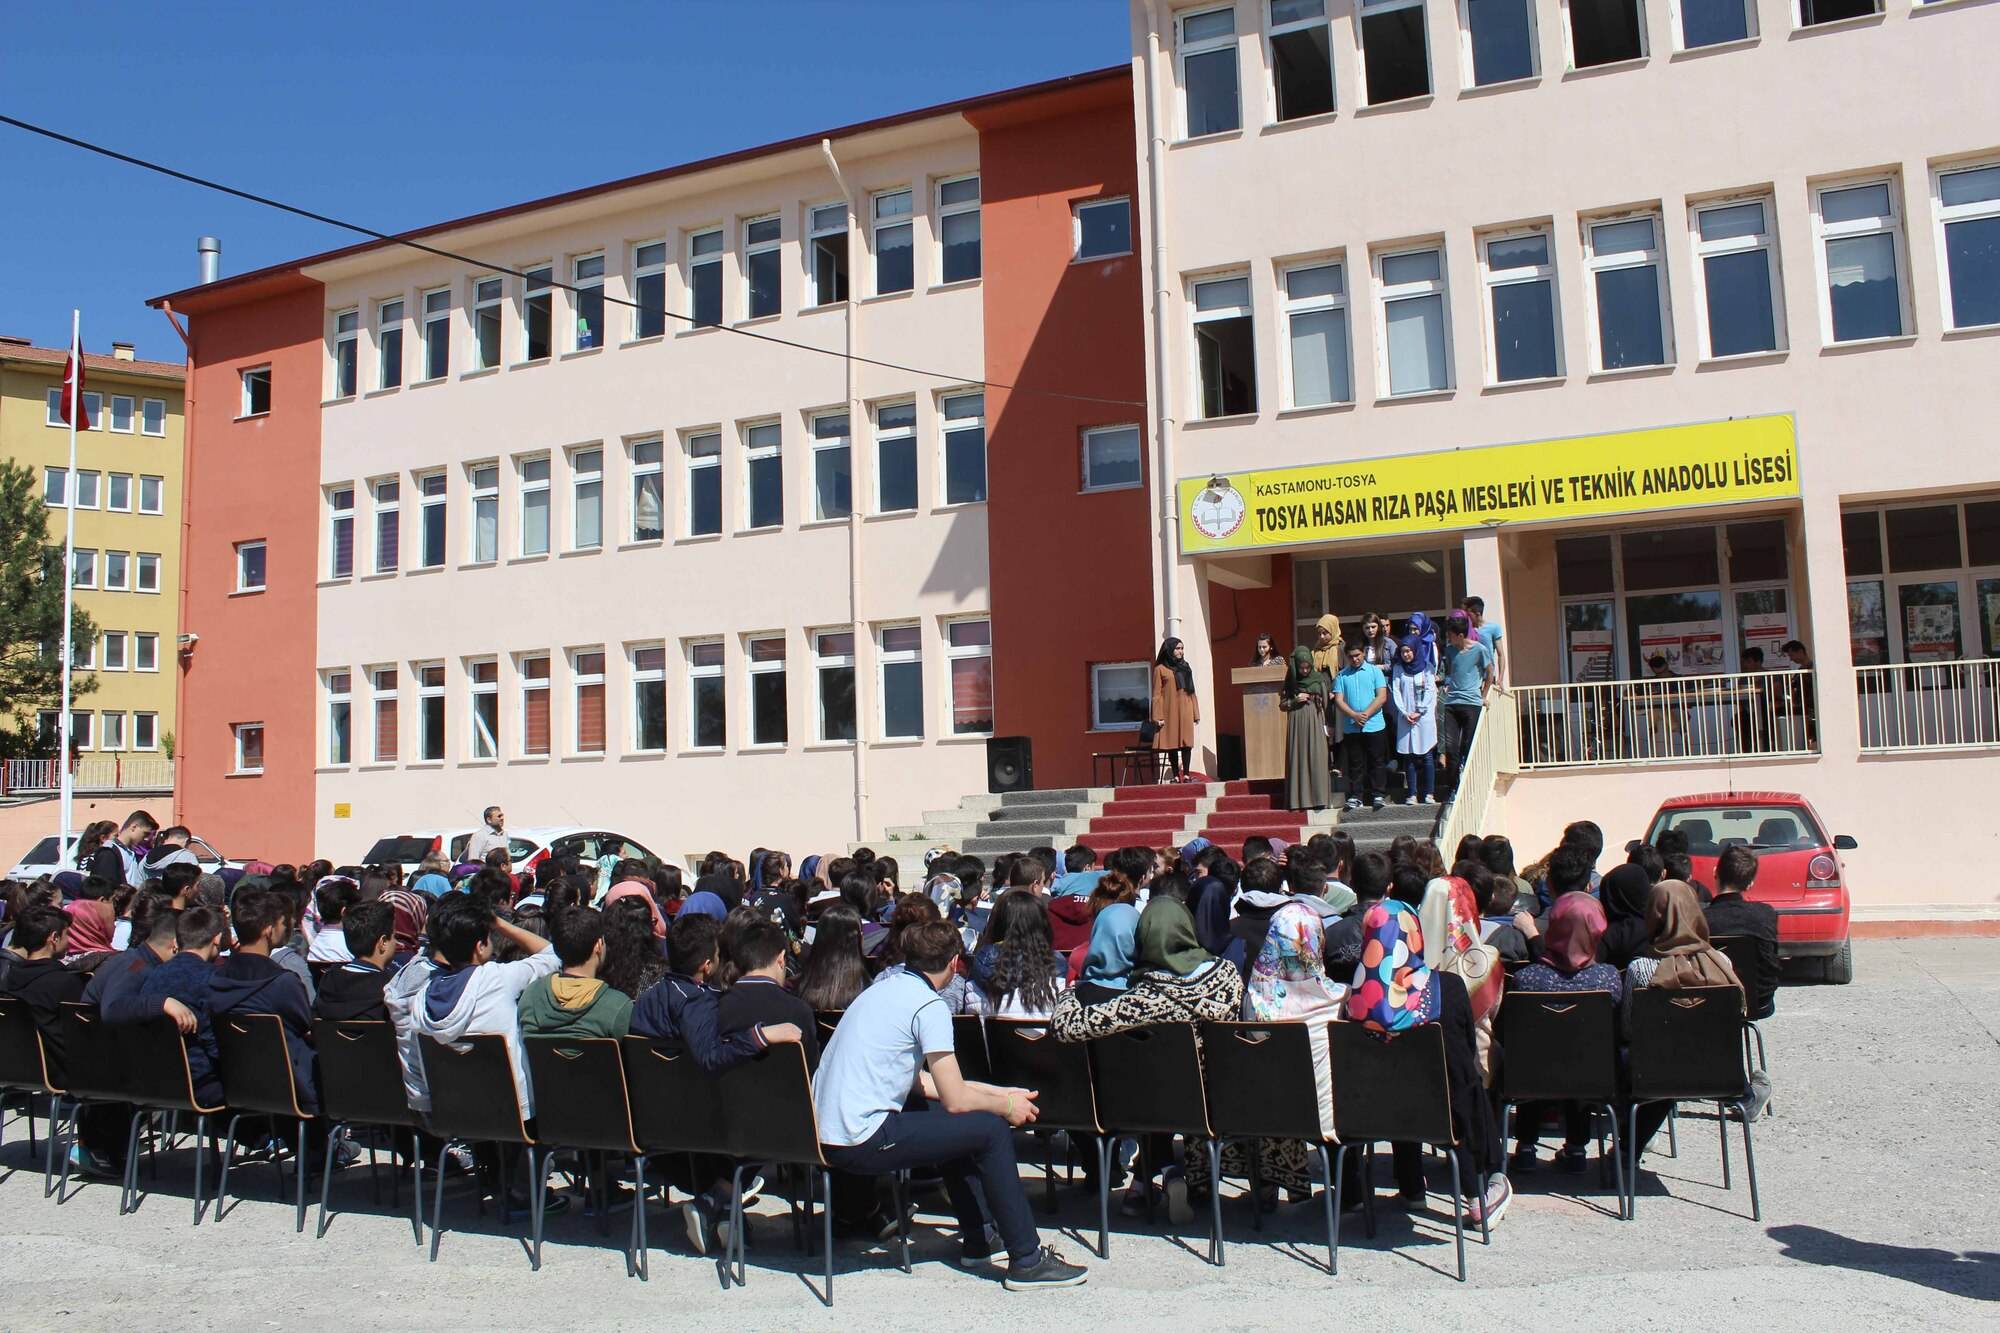 Hasan Rıza Paşa Mesleki ve Teknik Anadolu Lisesi